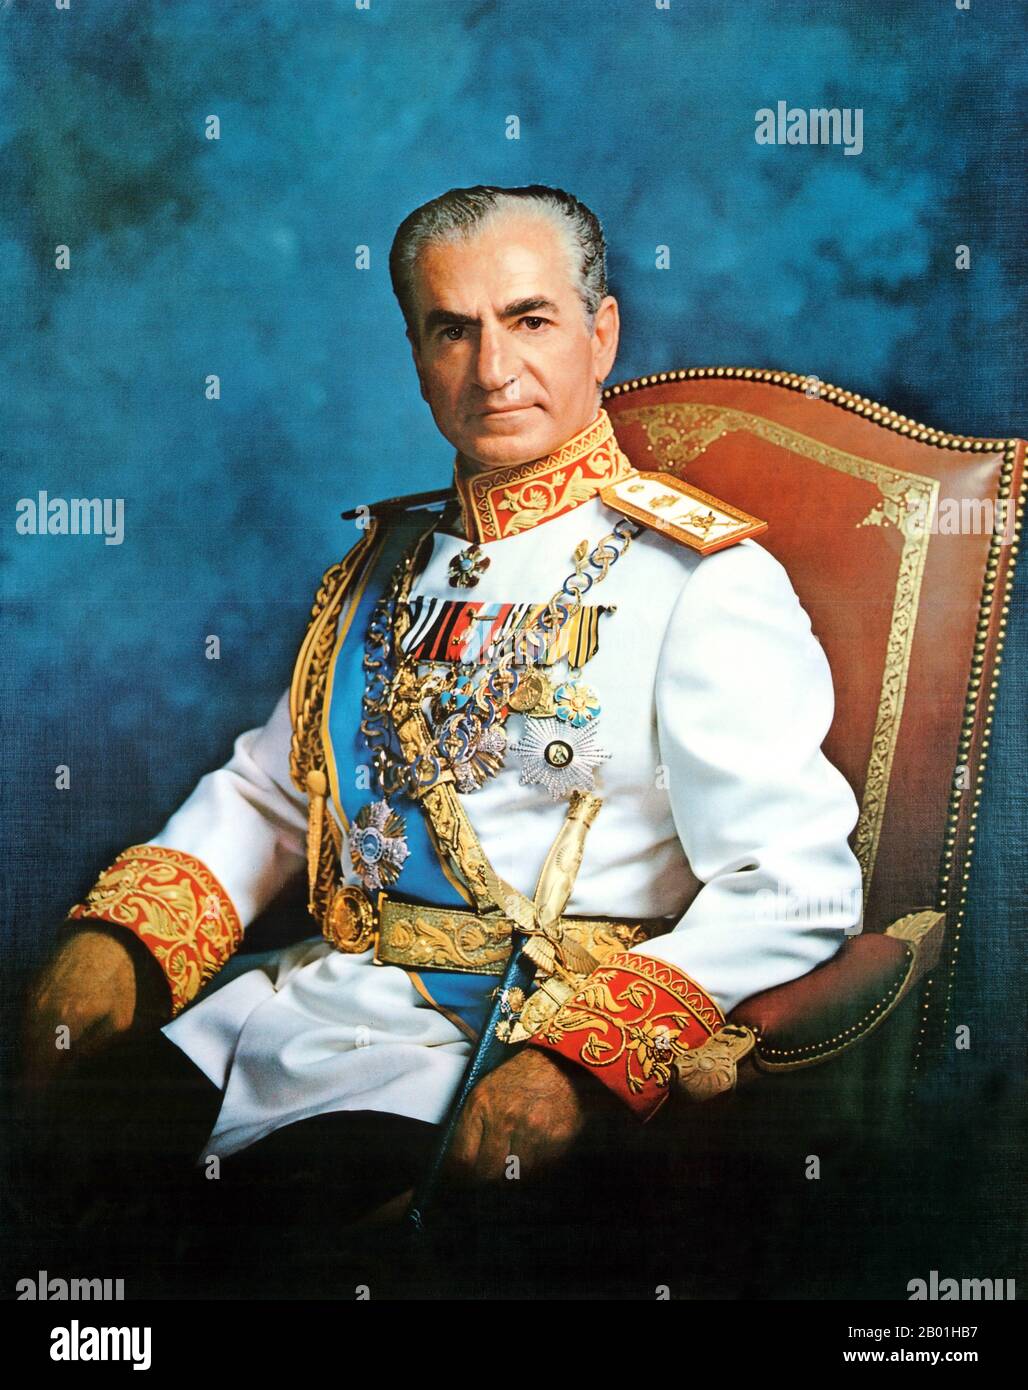 Iran/Perse : Portrait officiel de Mohammad Rezā Shāh Pahlavi (26 octobre 1919 – 27 juillet 1980), Shah d'Iran, Shah de Perse (r. 1941-1979), 1973. Mohammad Rezā Shāh Pahlavi a gouverné l'Iran du 16 septembre 1941 jusqu'à son renversement par la Révolution iranienne le 11 février 1979. Il était le deuxième et dernier monarque de la Maison de Pahlavi de la monarchie iranienne. Mohammad Reza Shah est arrivé au pouvoir pendant la Seconde Guerre mondiale après qu'une invasion anglo-soviétique ait forcé l'abdication de son père Reza Shah. Pendant son règne, l'industrie pétrolière iranienne a été nationalisée sous le Premier ministre Mohammad Mosaddegh. Banque D'Images